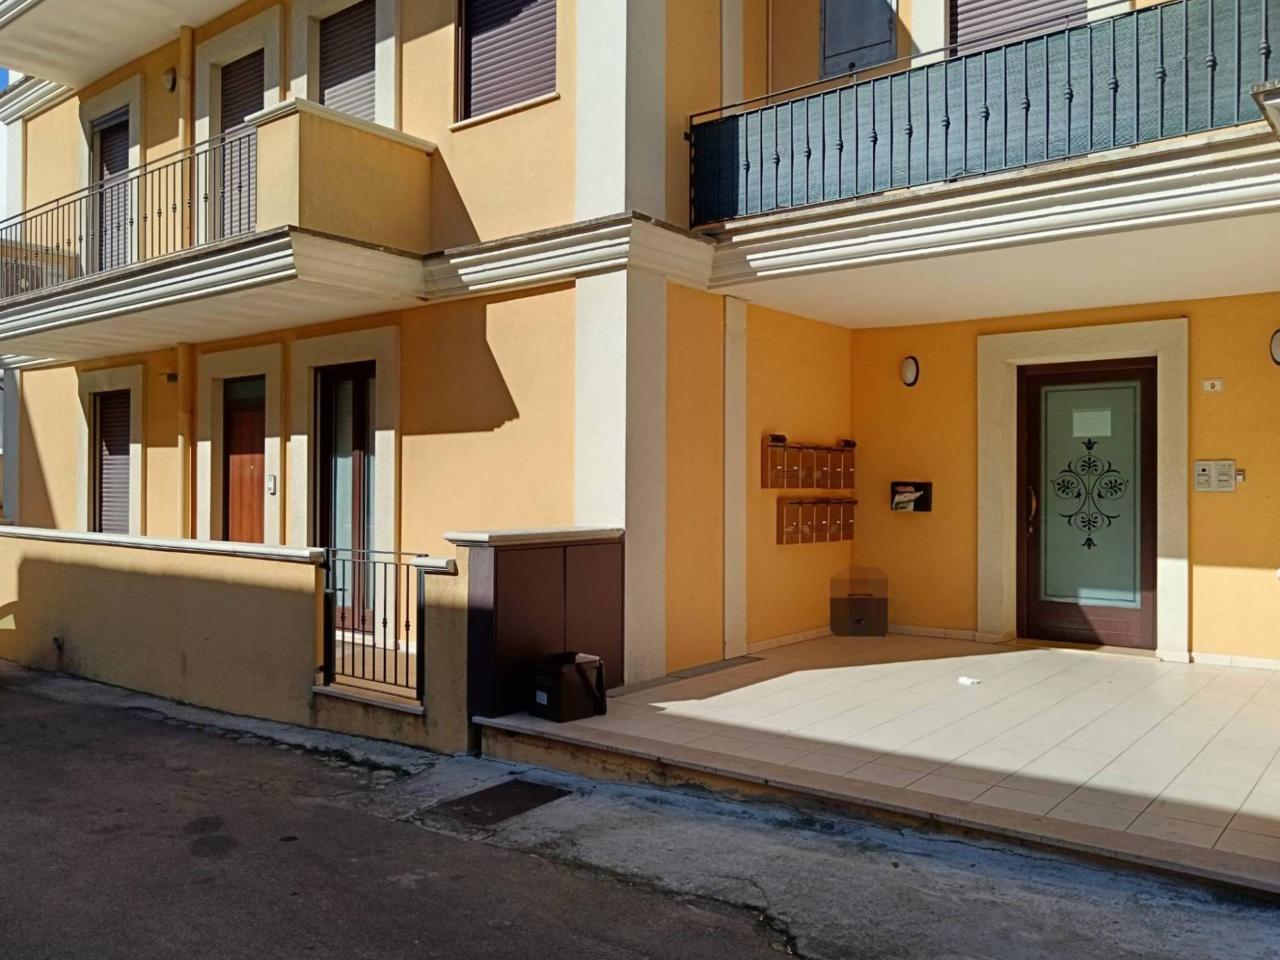 Appartamento in vendita a Casarano